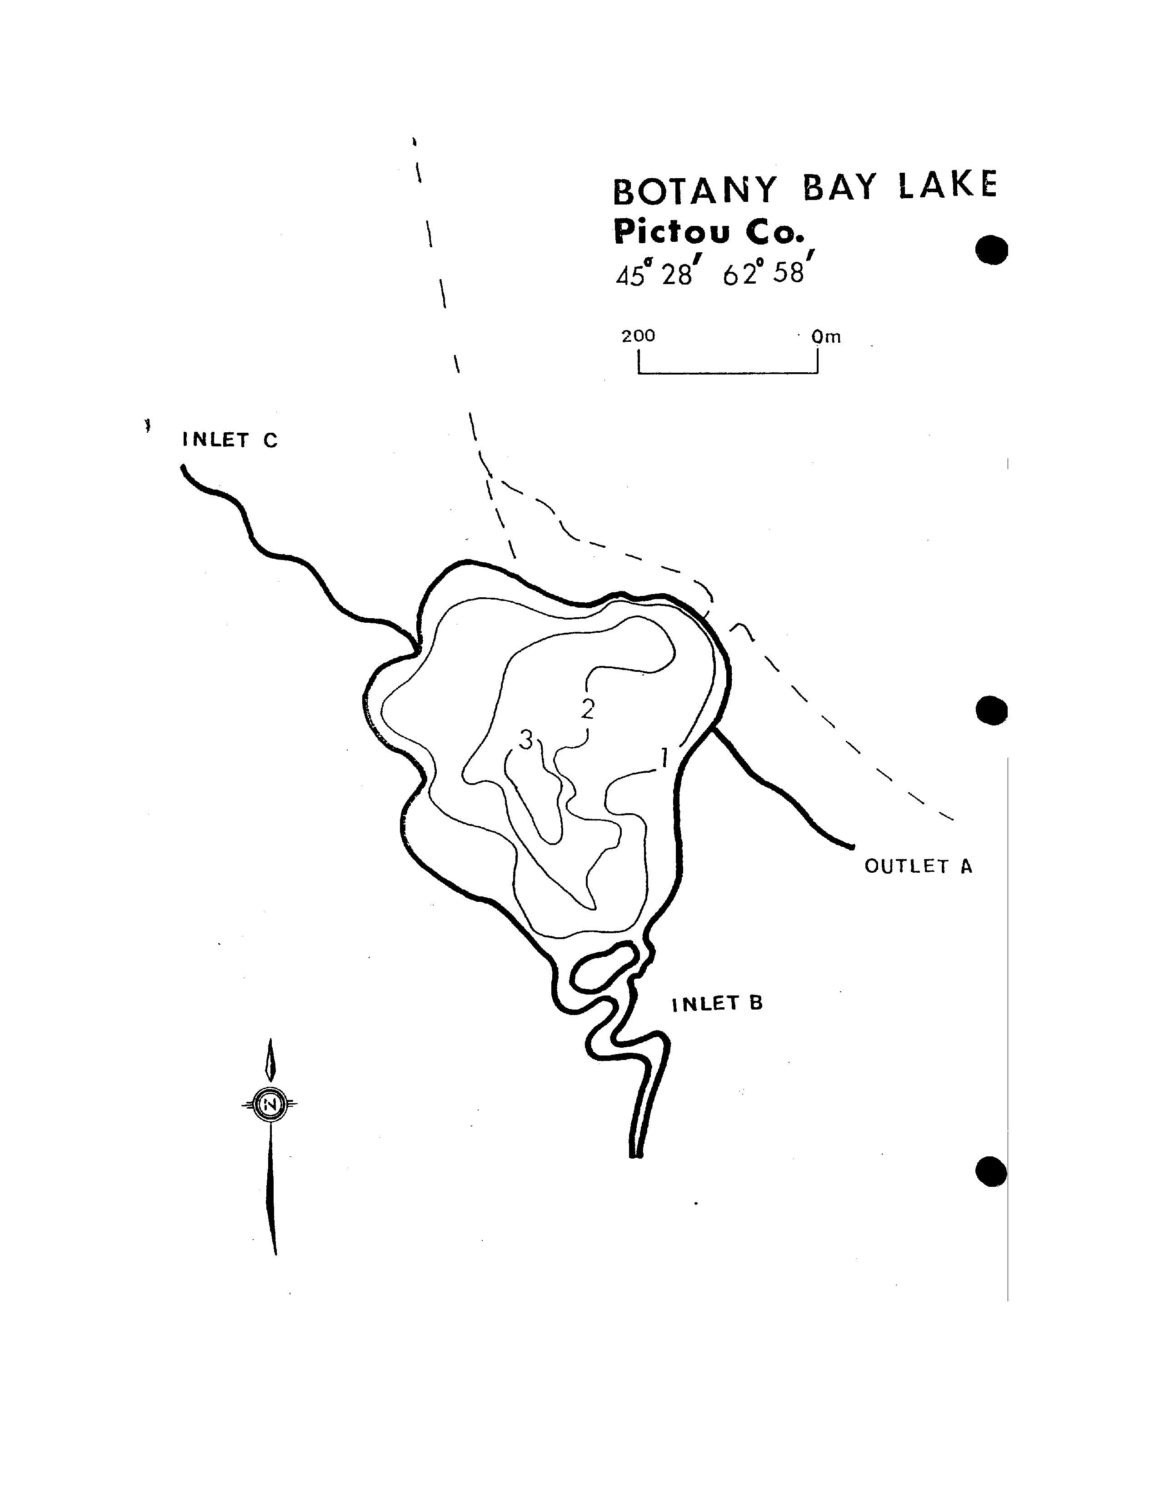 Botany Bay Lake - Pictou County Lake Maps